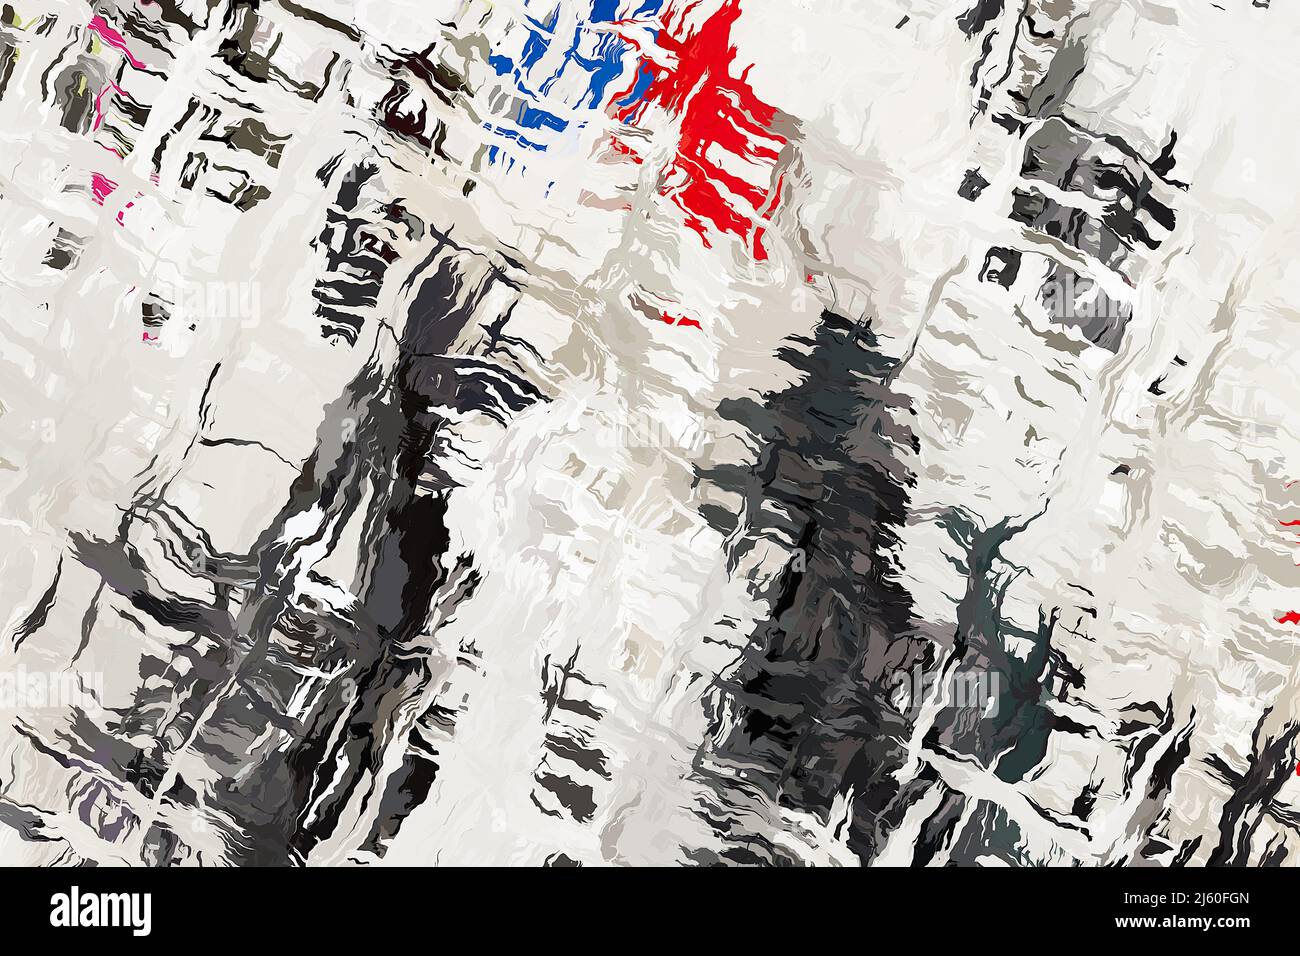 Elegante y elegante textura abstracta de un patrón blanco y negro ondulado con manchas de color. Fondo original, delicado y ventilado, en tonos grises, rojo y azul. Foto de stock